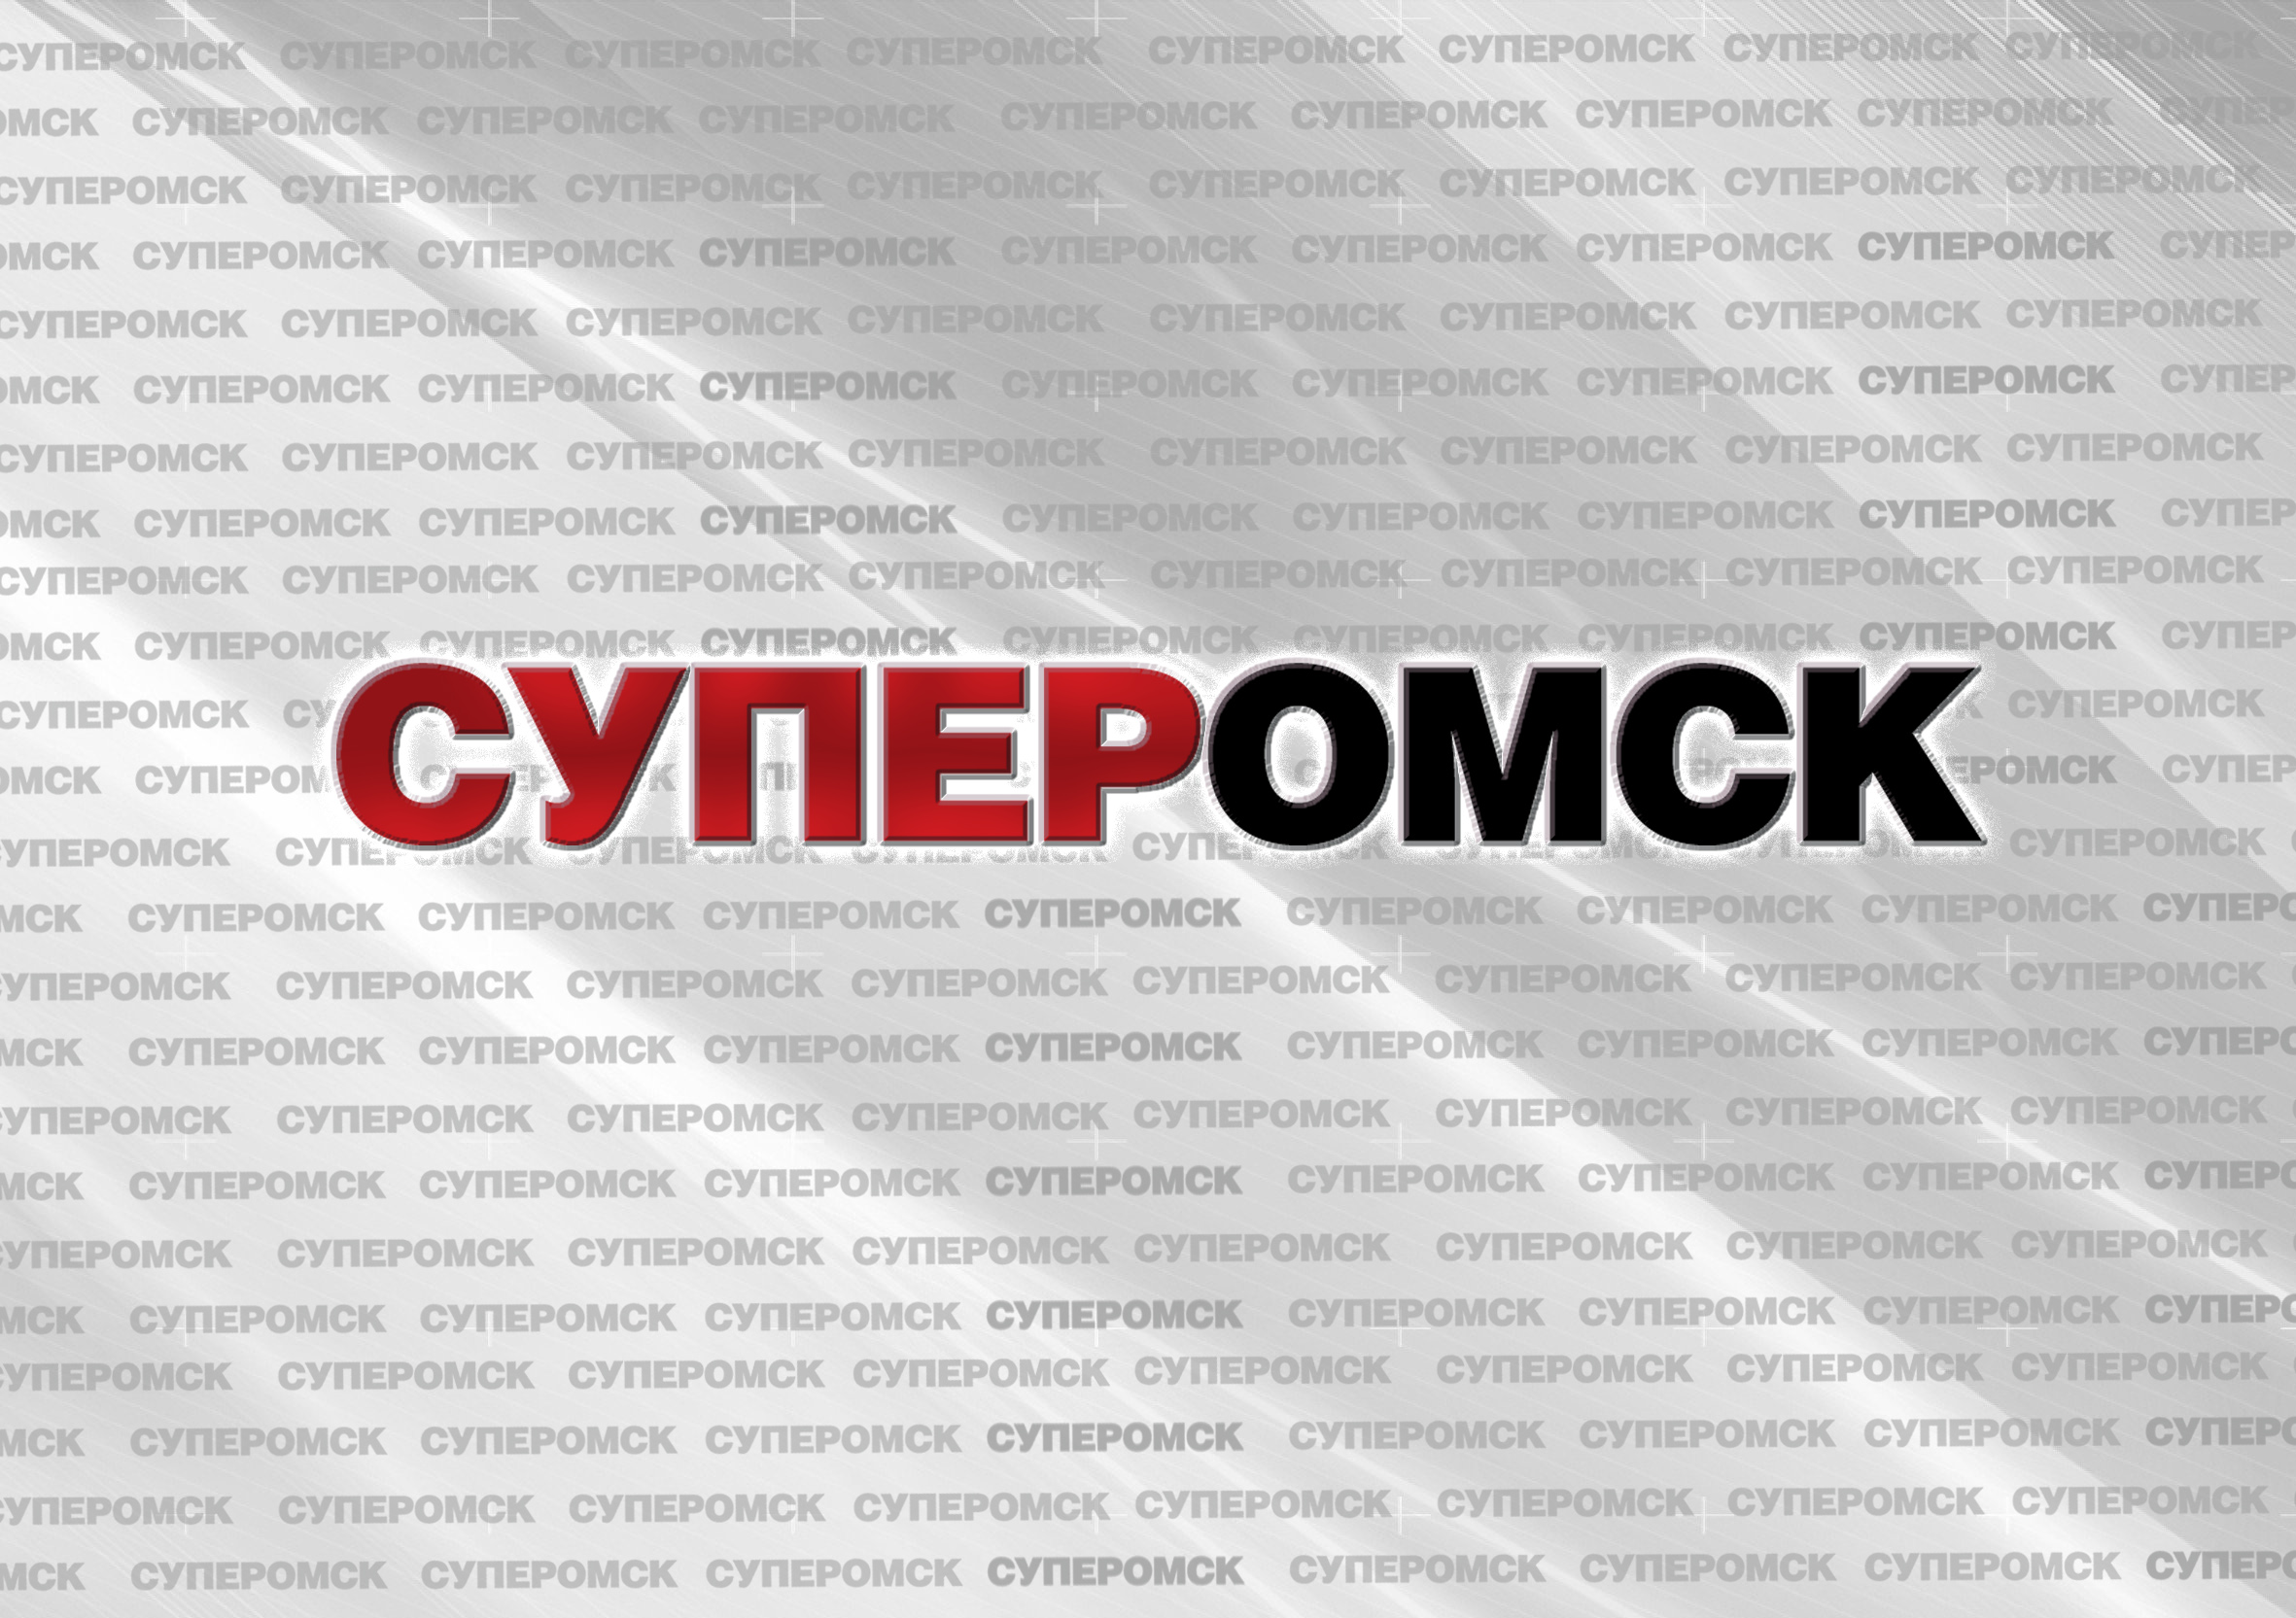 Задержанных омской полицией будут перевозить по евростандартам